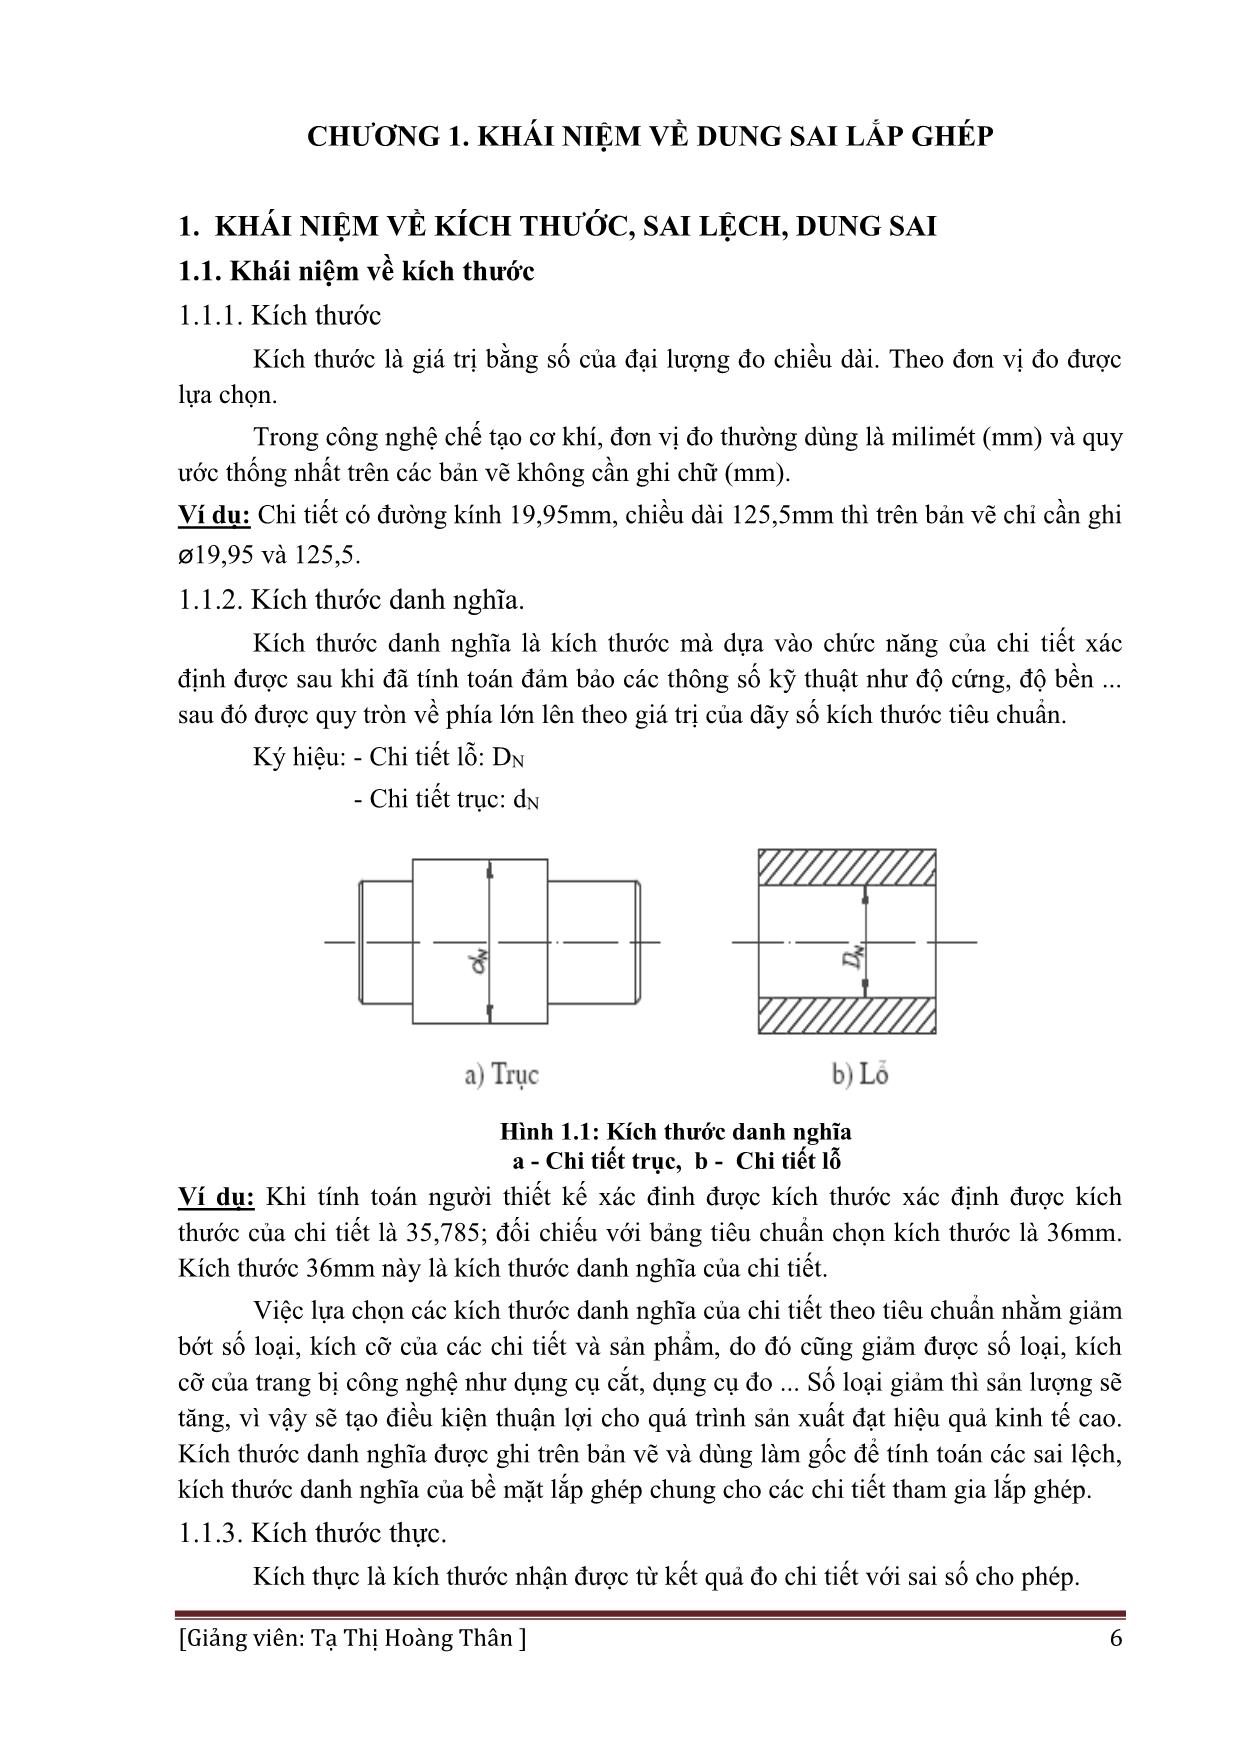 Giáo trình Dung sai lắp ghép và đo lường kỹ thuật - Nghề: Hàn trang 6